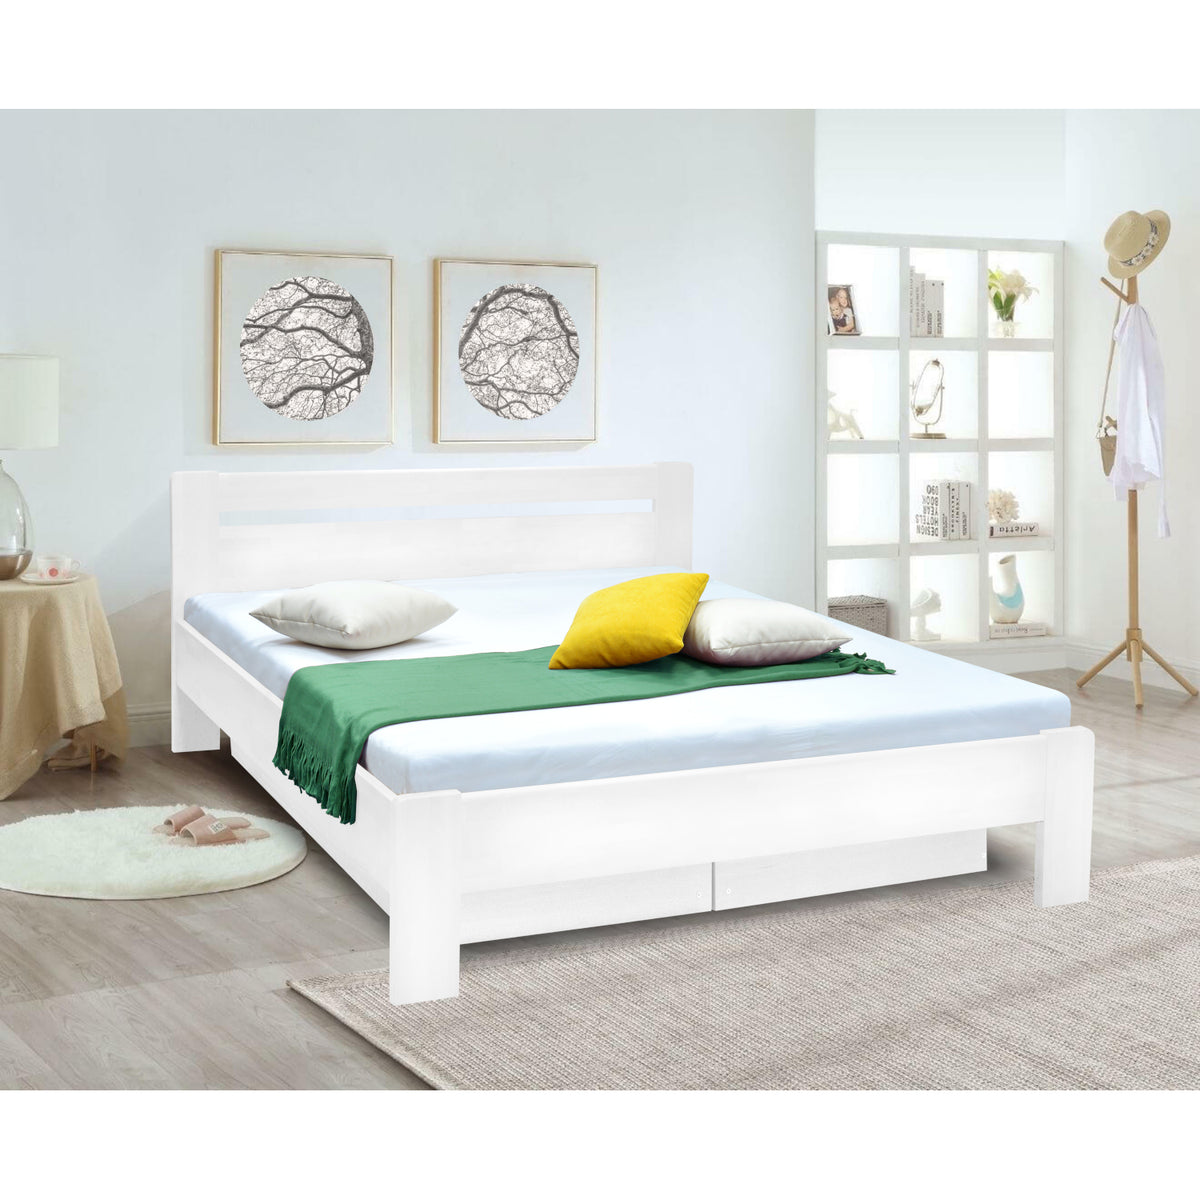 Masivní postel Maribo 2, 160x200, vč. roštu, bez matrace, bílá